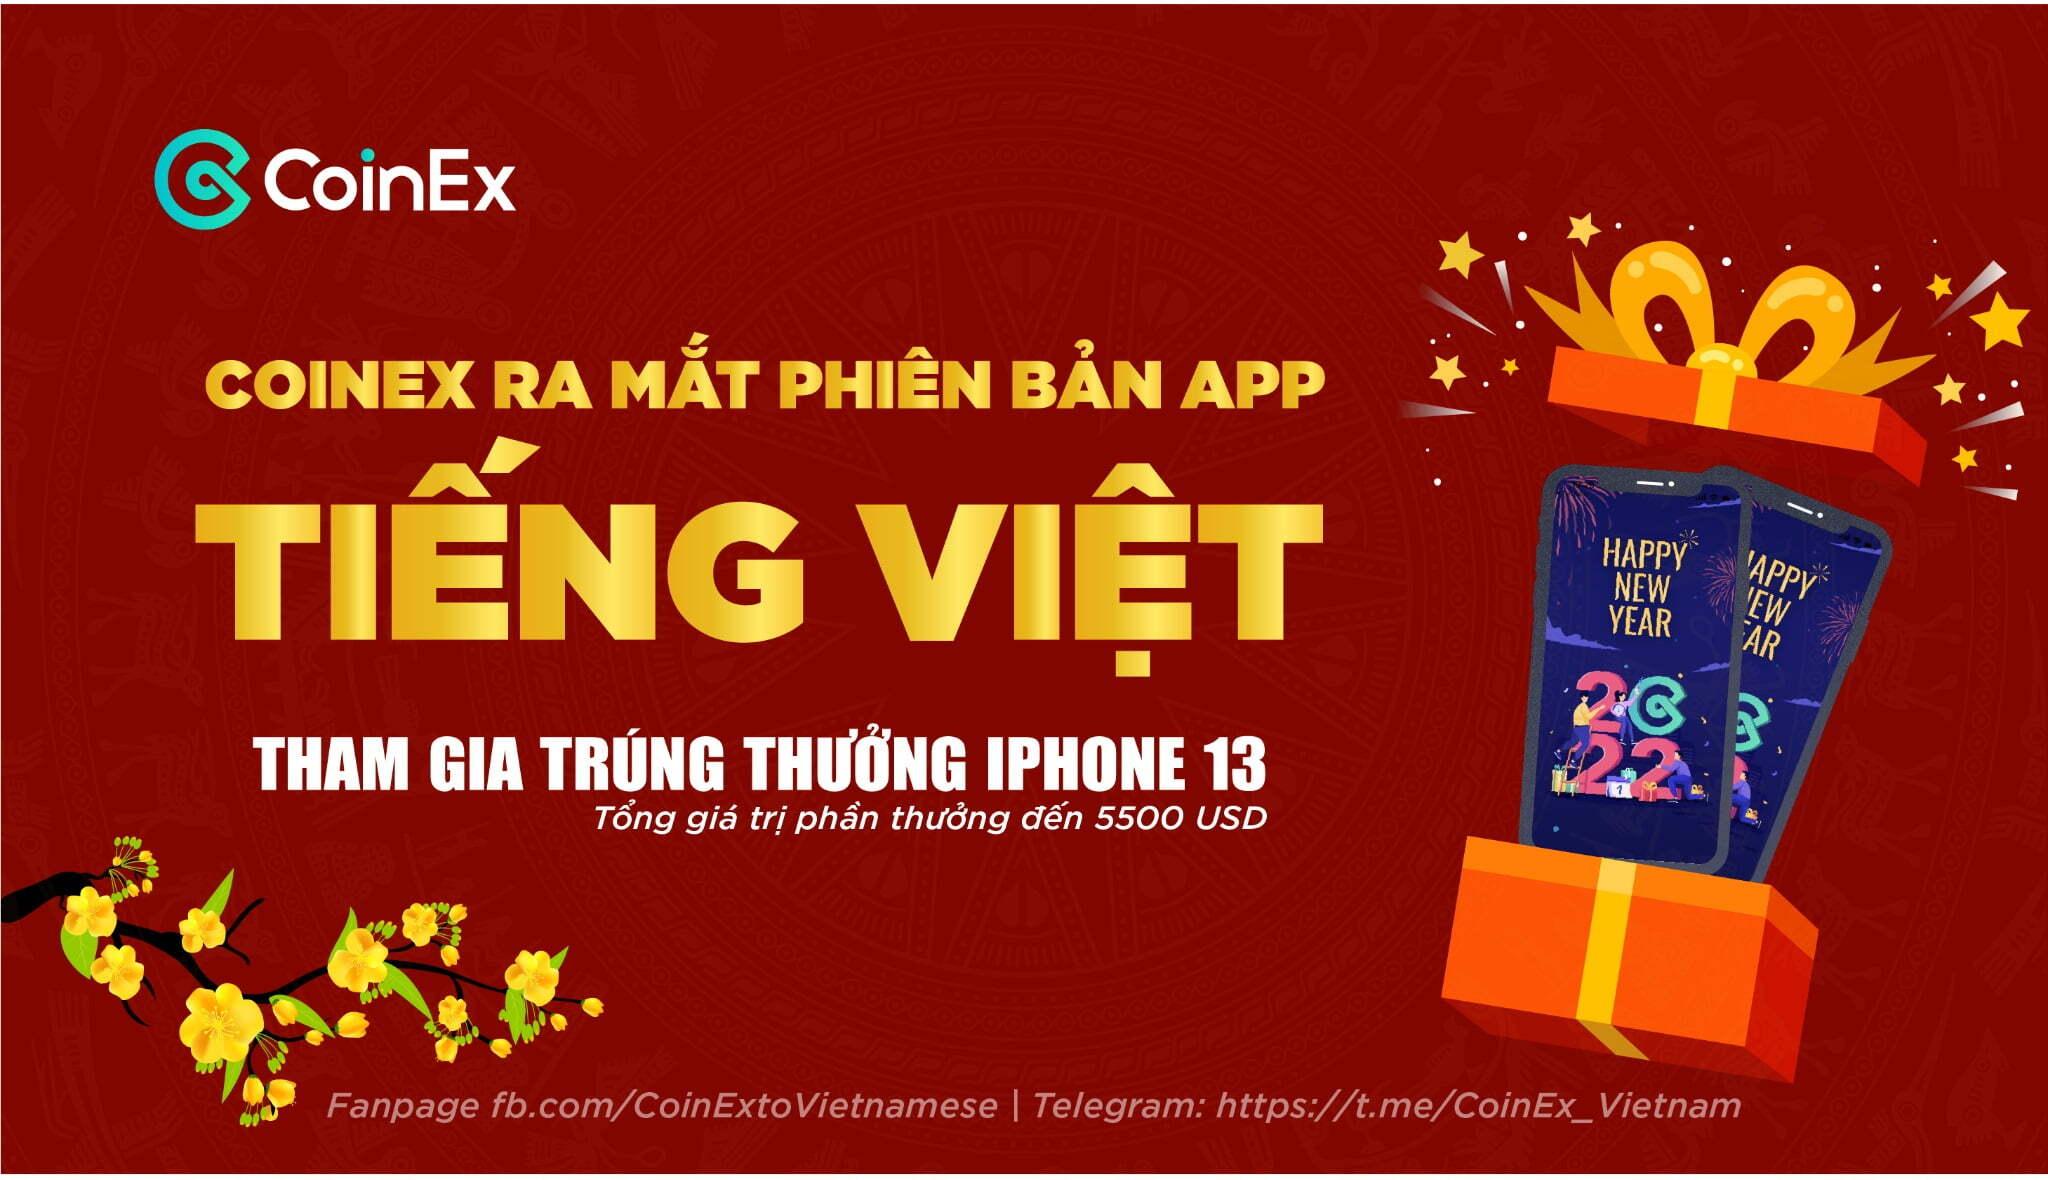 coinex-ra-mat-ung-dung-di-dong-phien-ban-tieng-viet-cung-nhan-thuong-iphone-13-mini-va-50000-cet